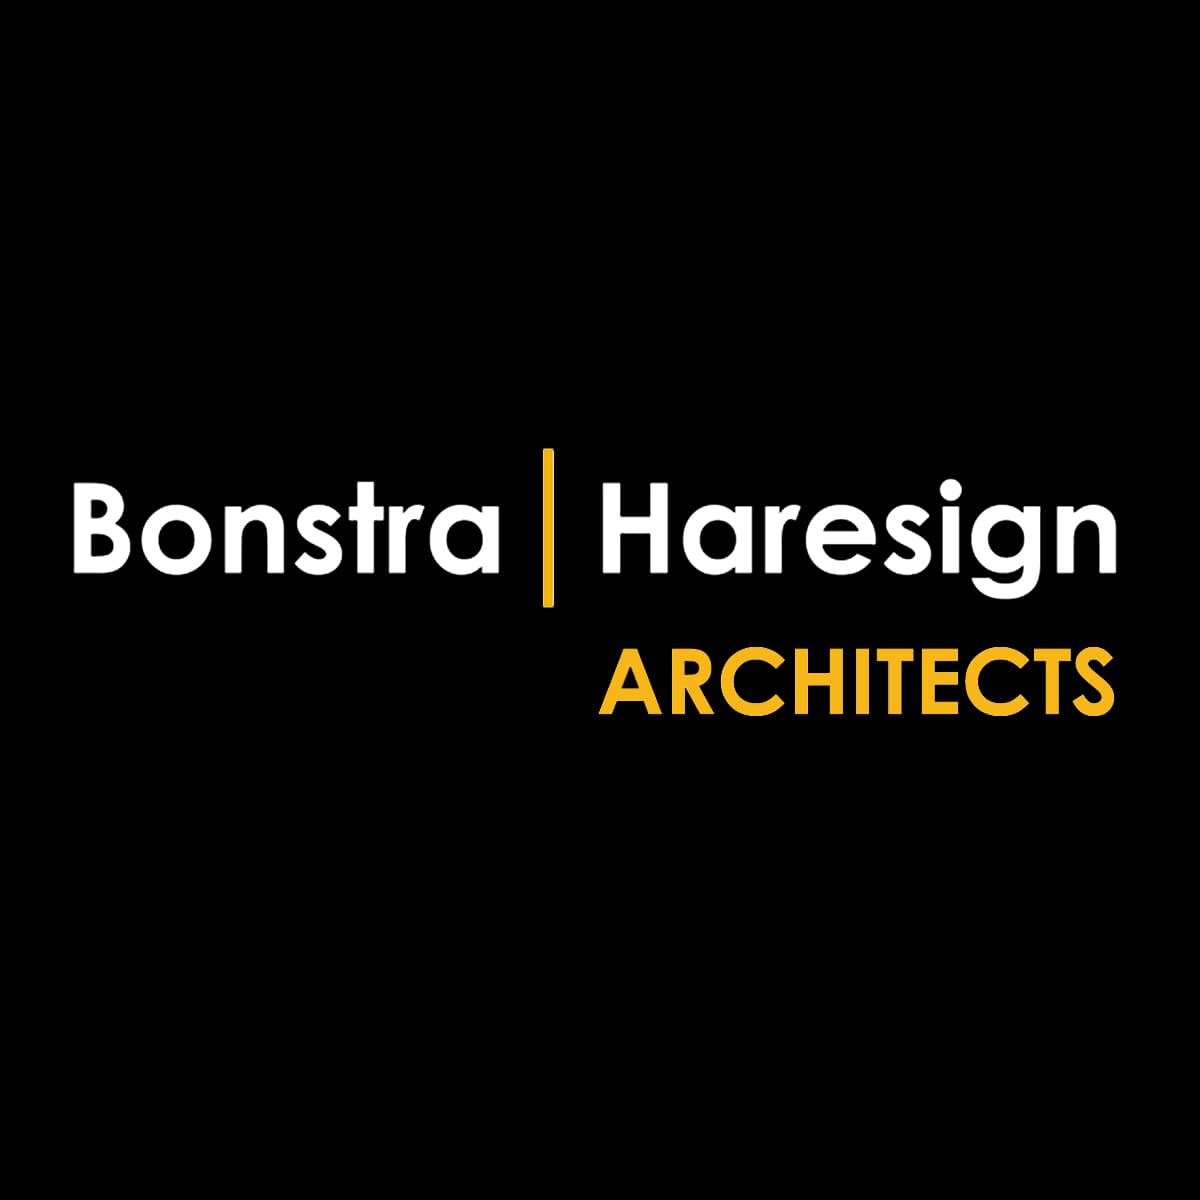 Bonstra Haresign Architects